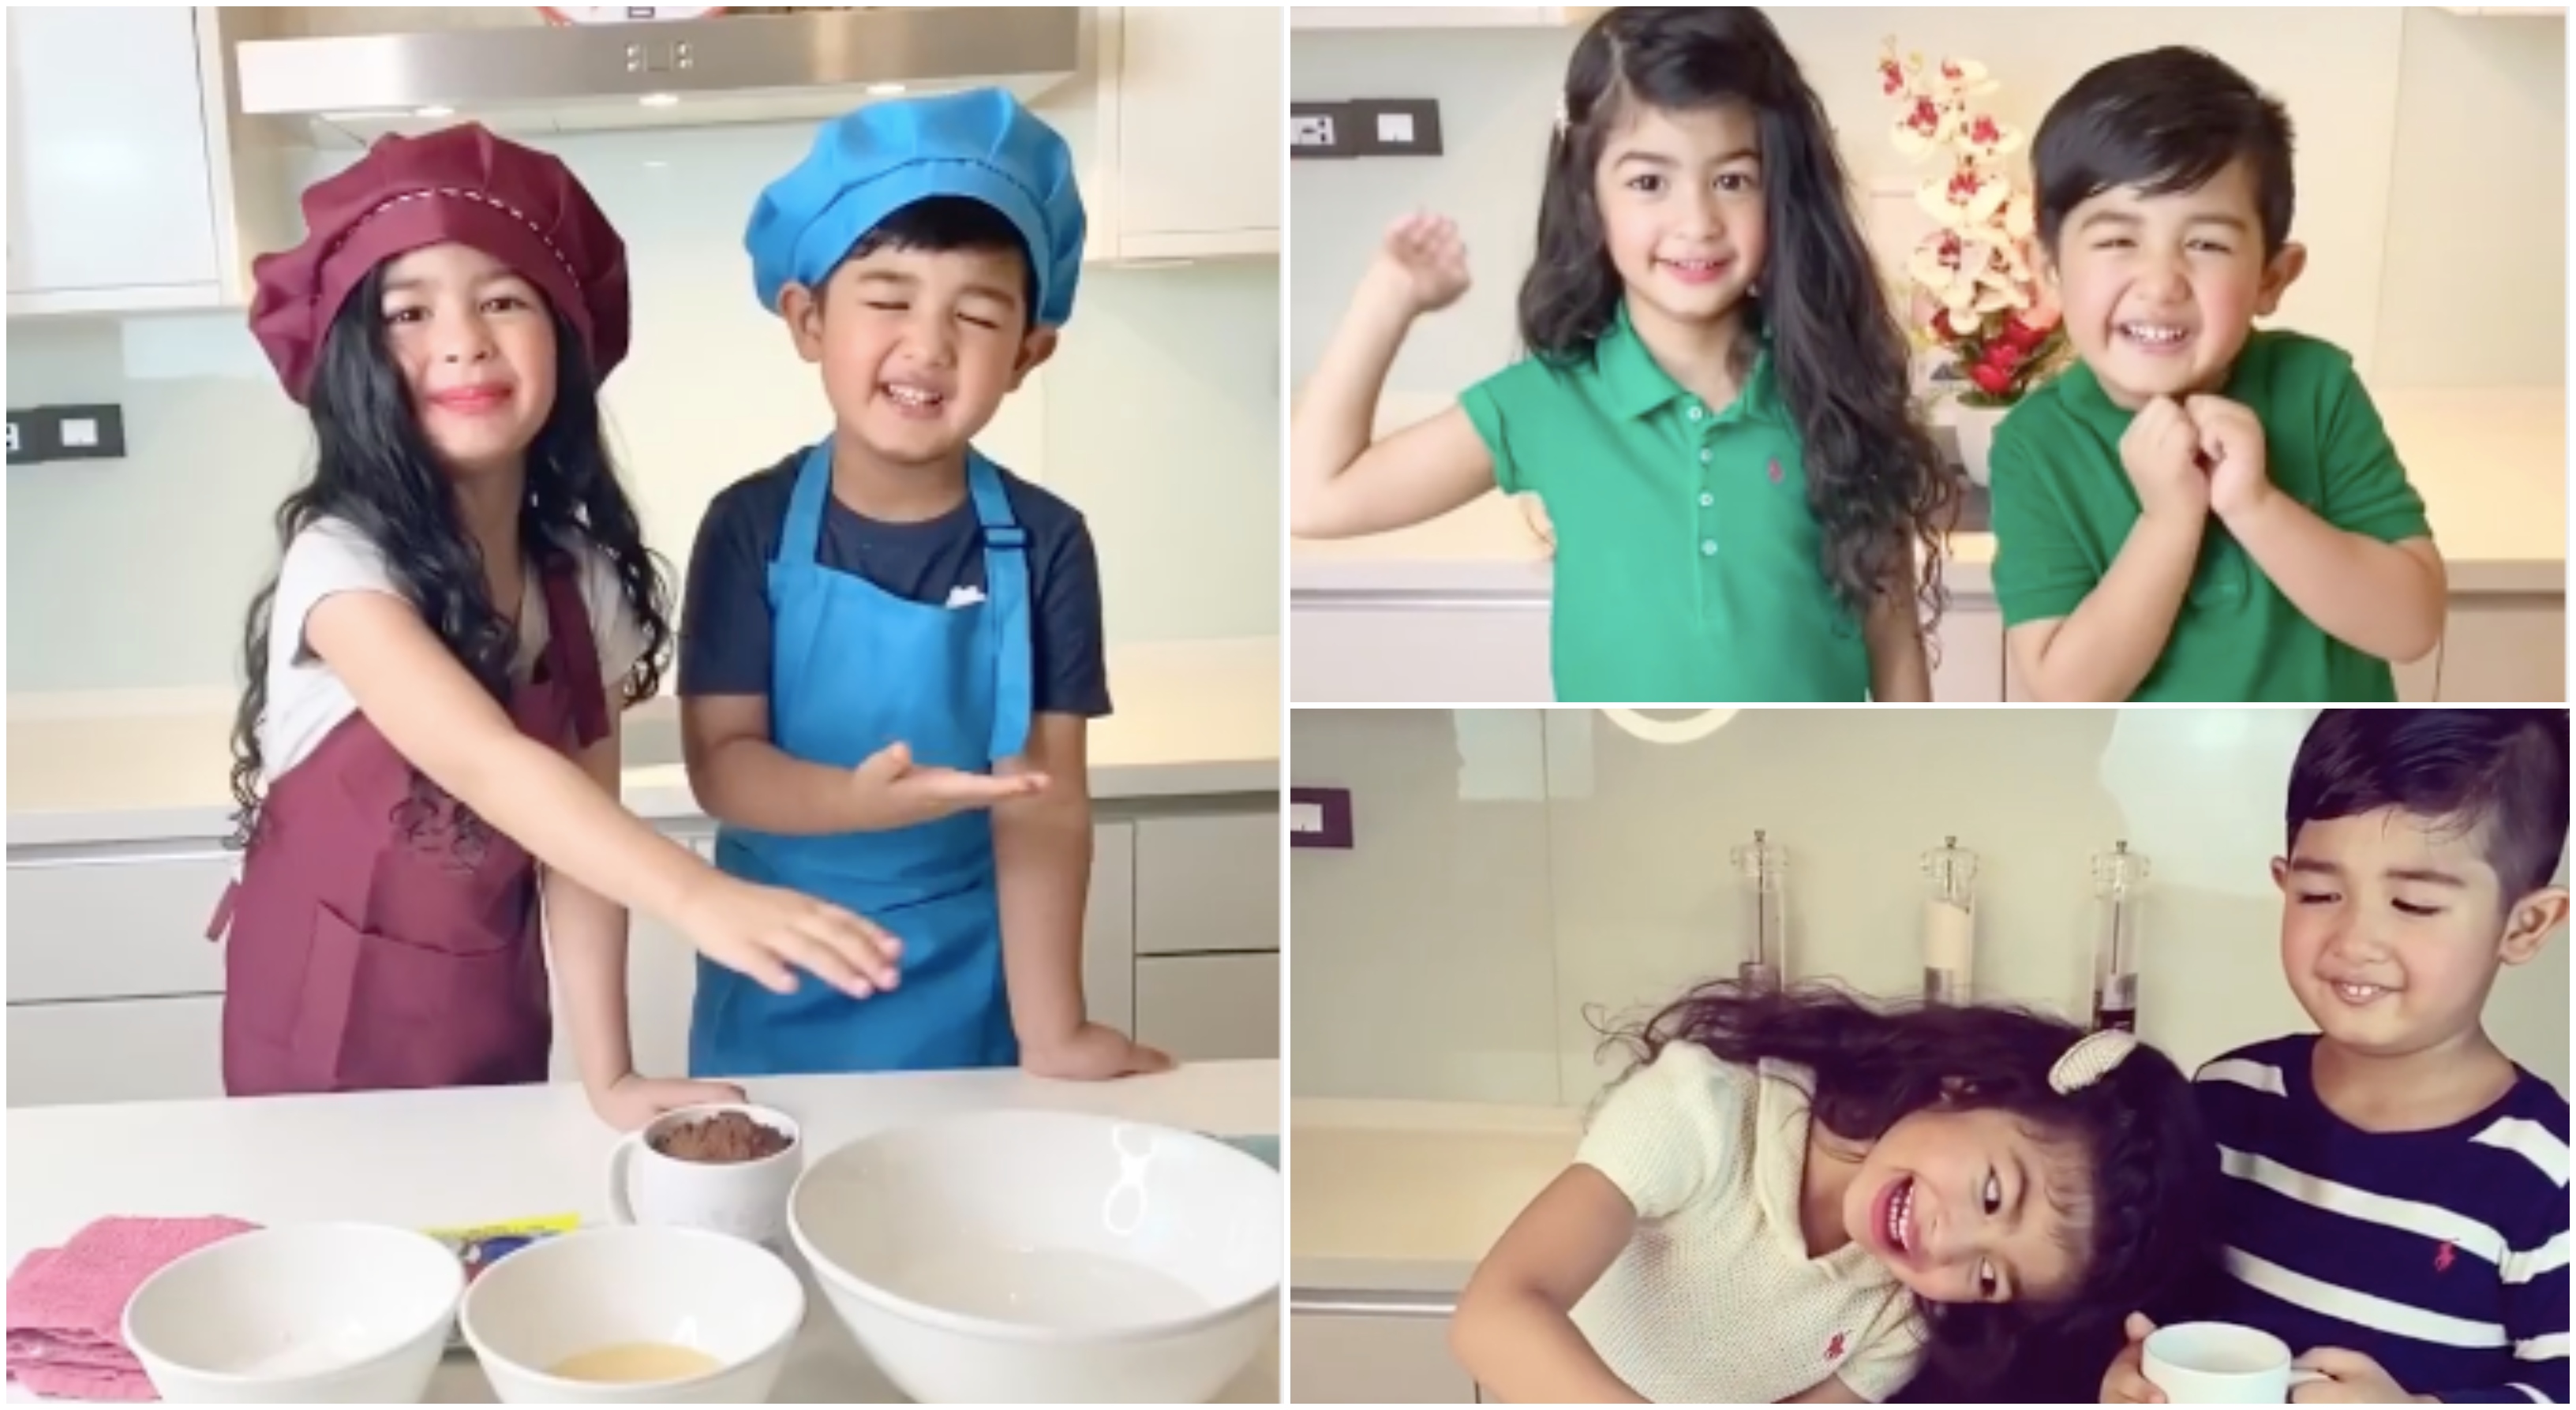 [VIDEO] Telatah Comel Anak Kembar Eina Azman Di Dapur, Dah Take Over Mummy Nampaknya!